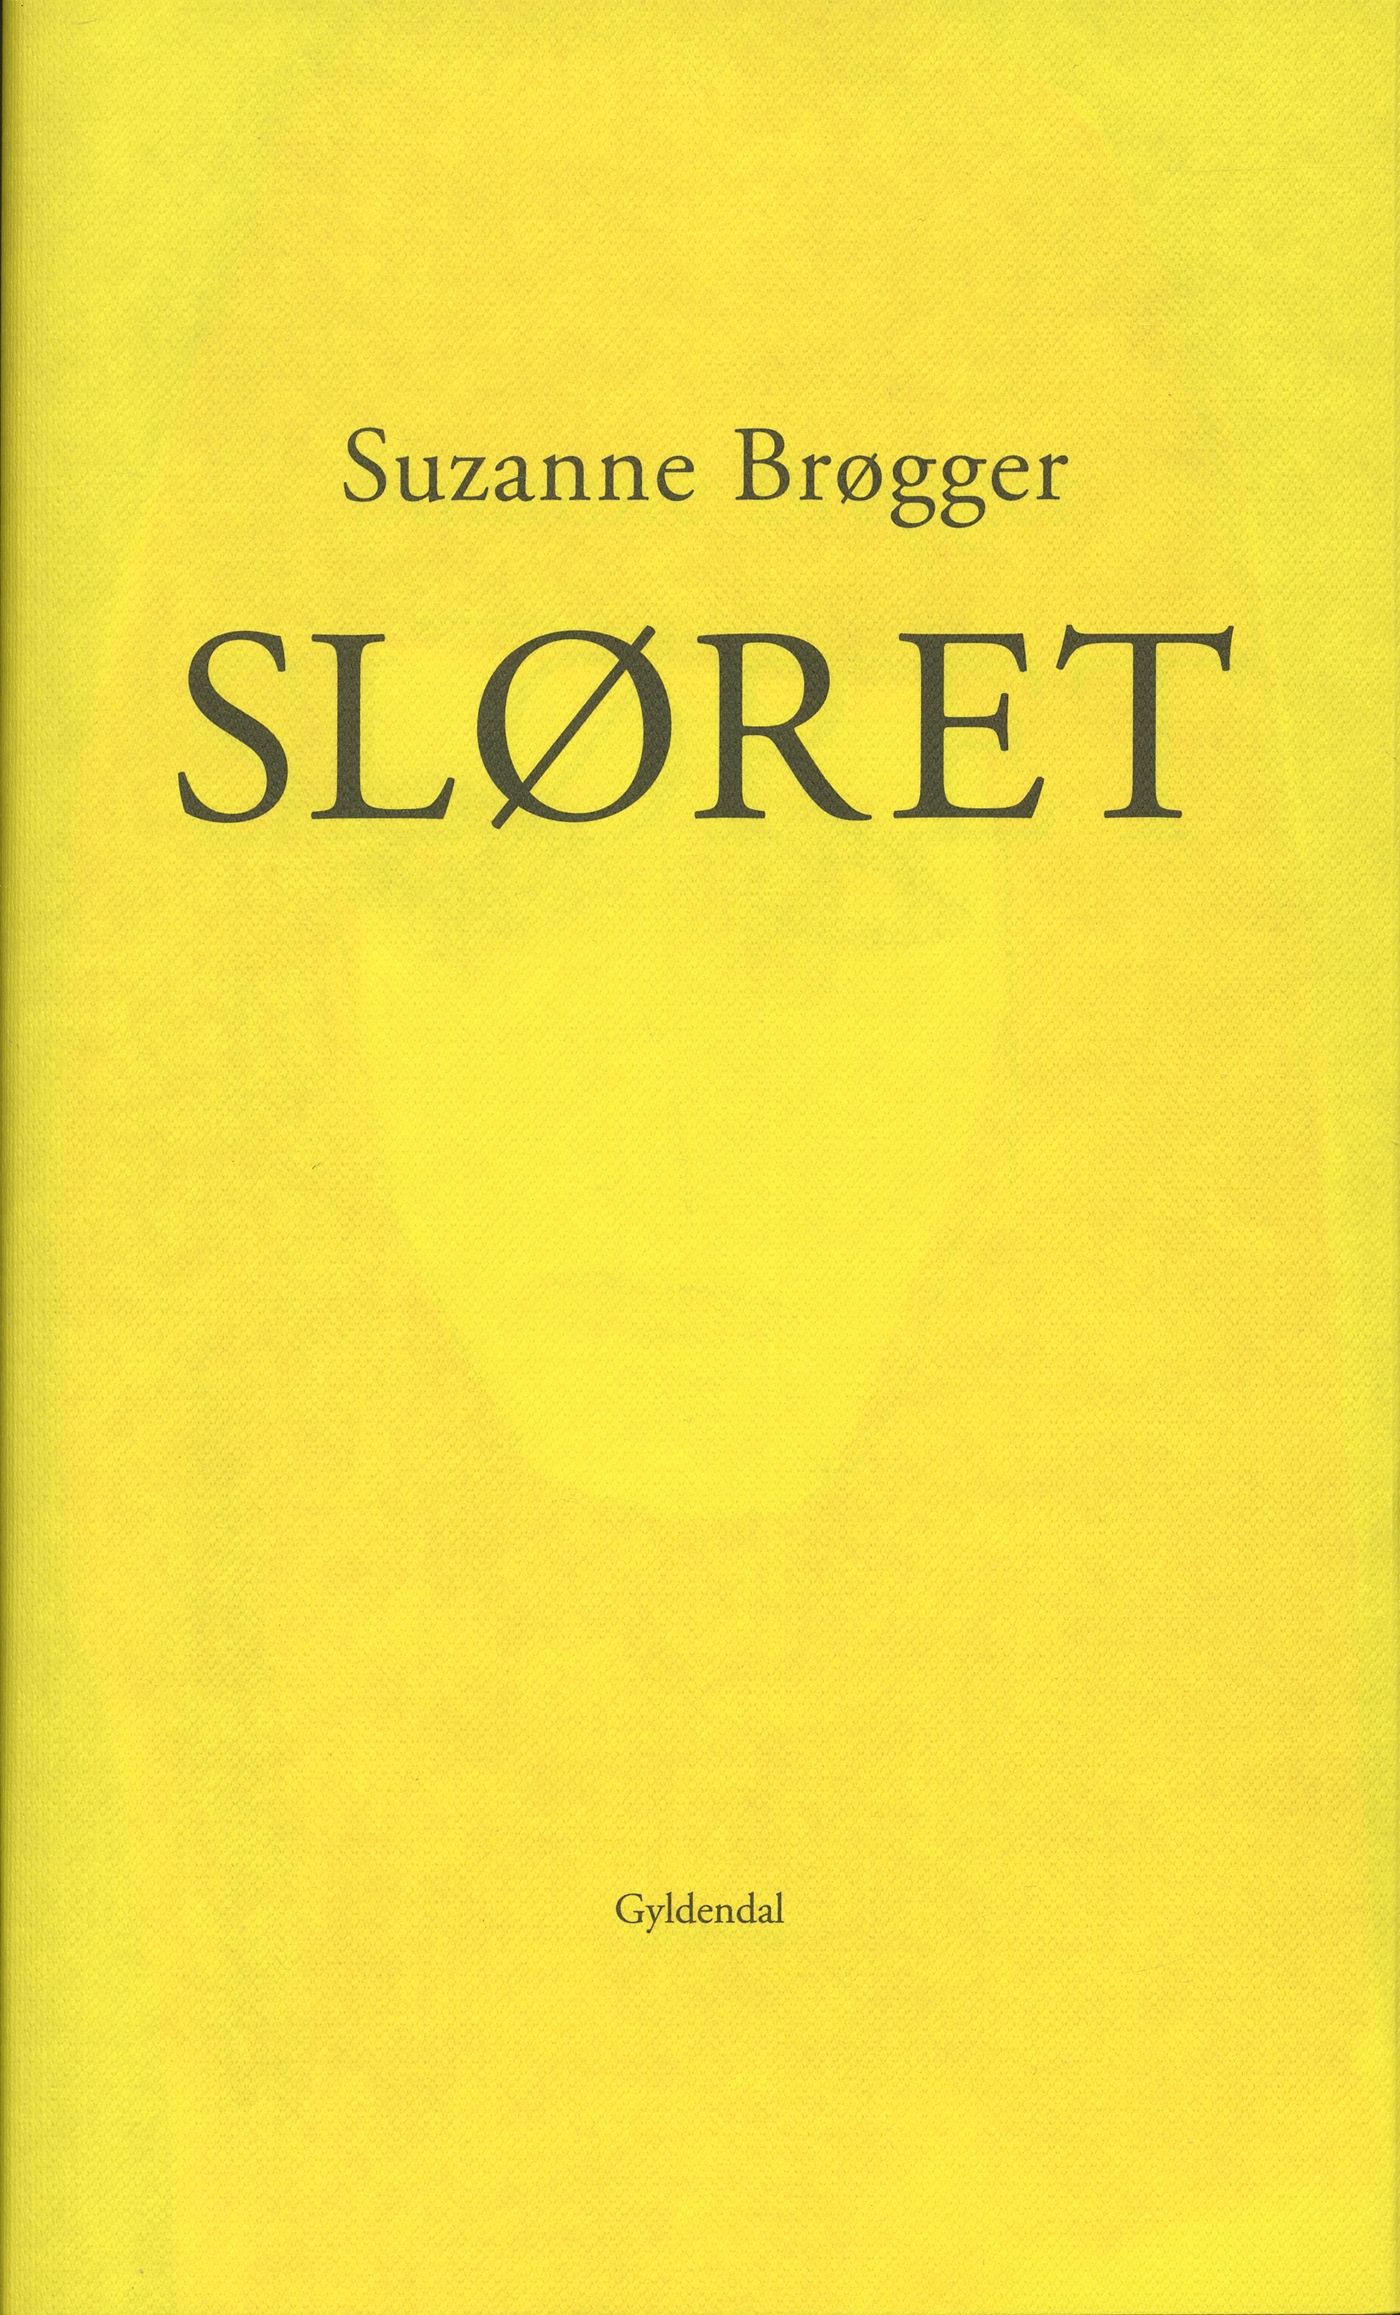 Sløret, eBook by Suzanne Brøgger